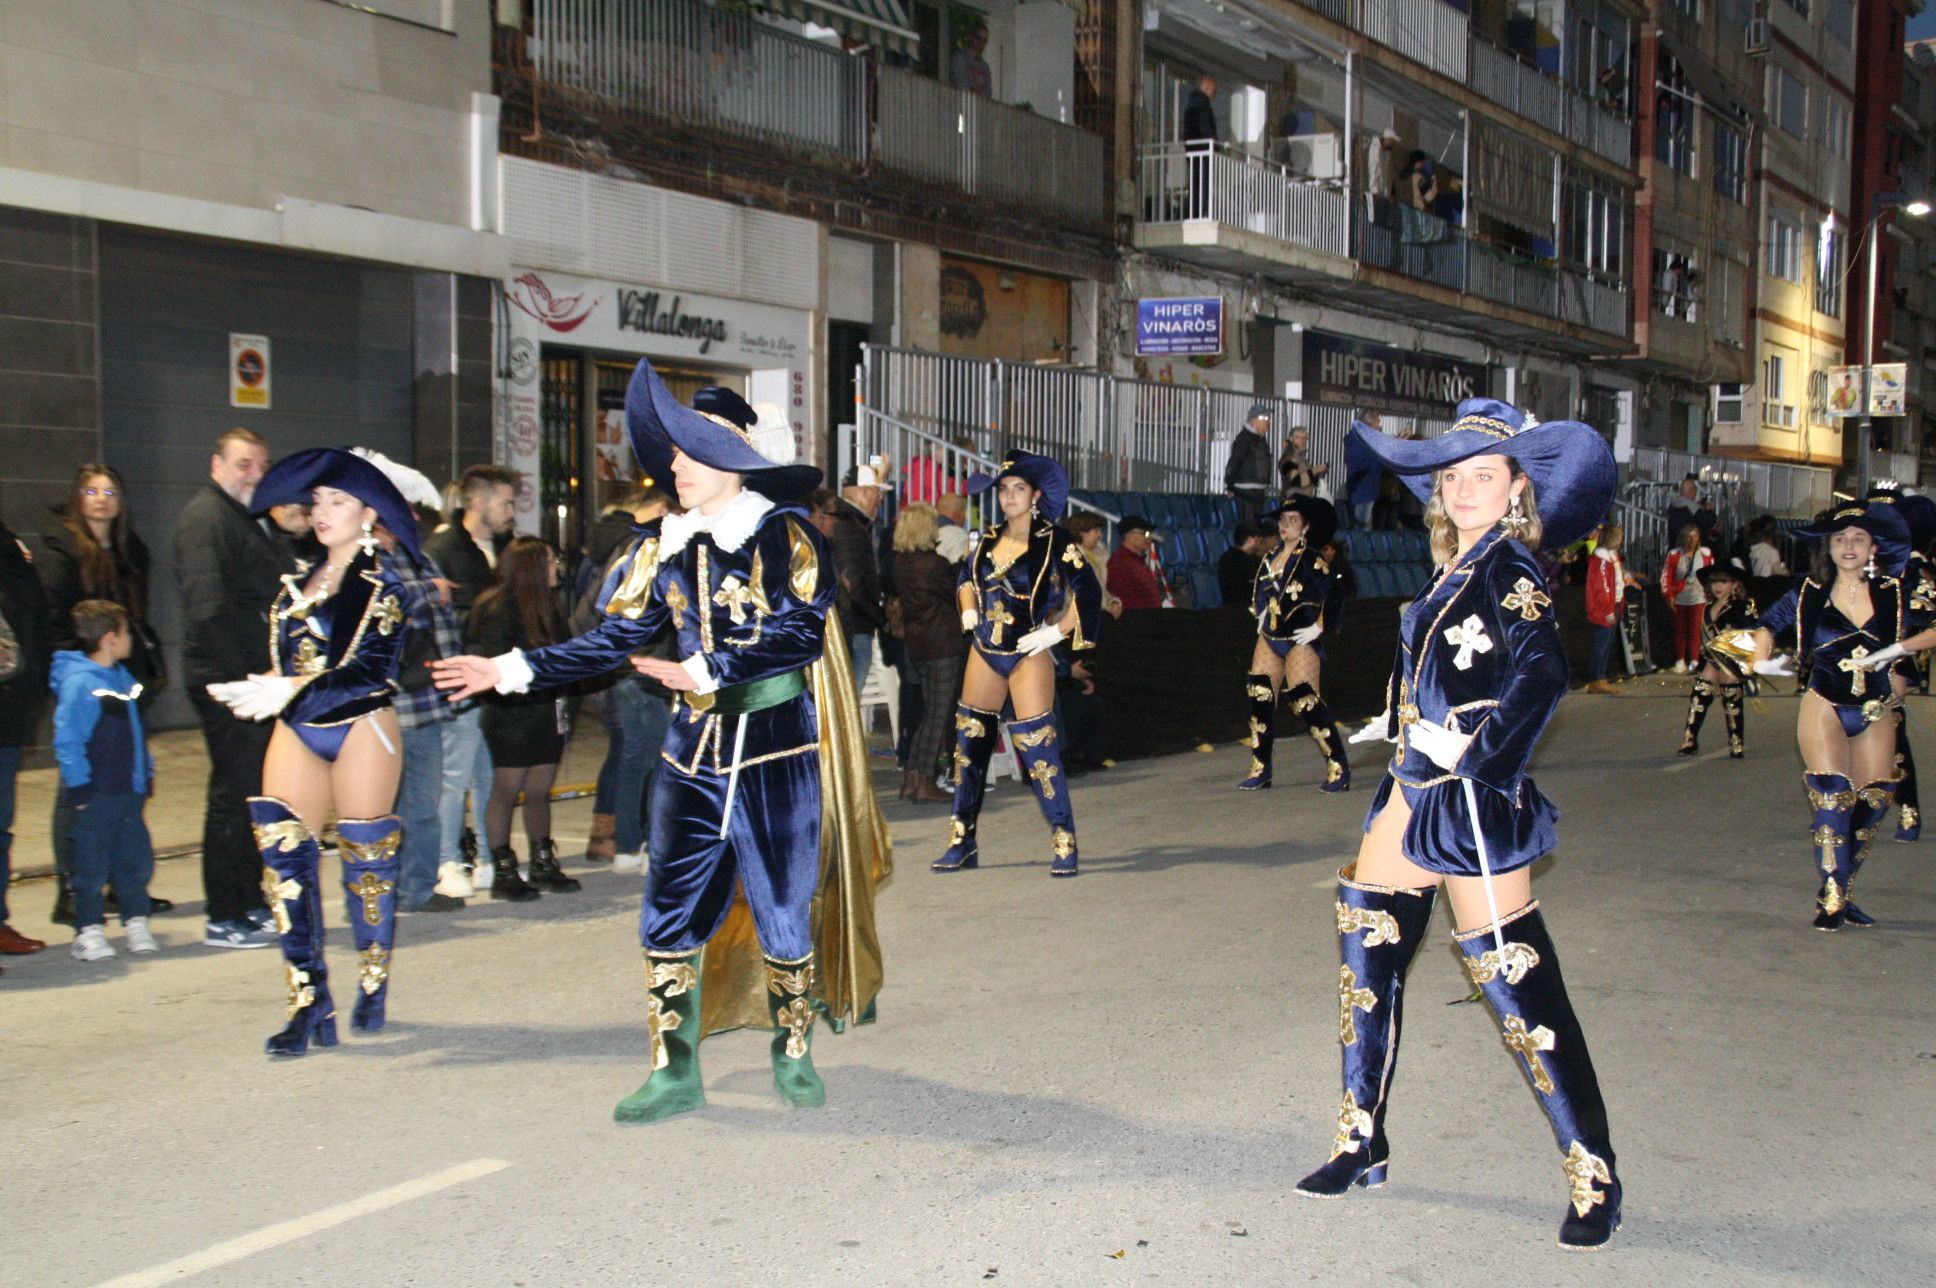 Macrogalería de fotos del segundo desfile del Carnaval de Vinaròs